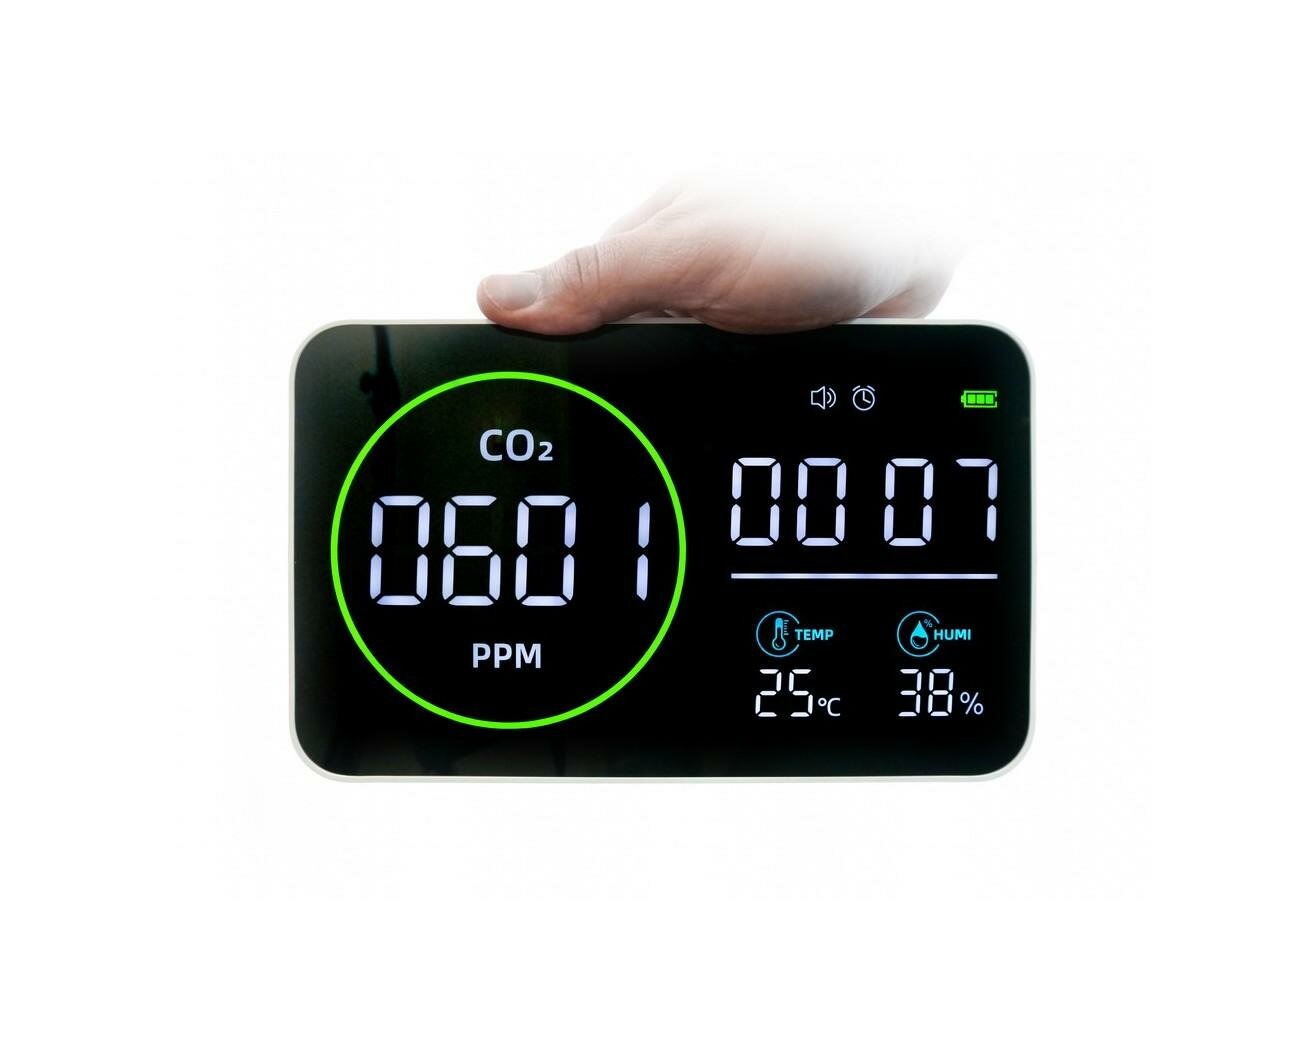 Комбинированный датчик измеритель качества воздуха 4 в 1 Straz Gaz 915-M6 (O43368AV): CO2 влажность температура часы. Экран 10 дюймов